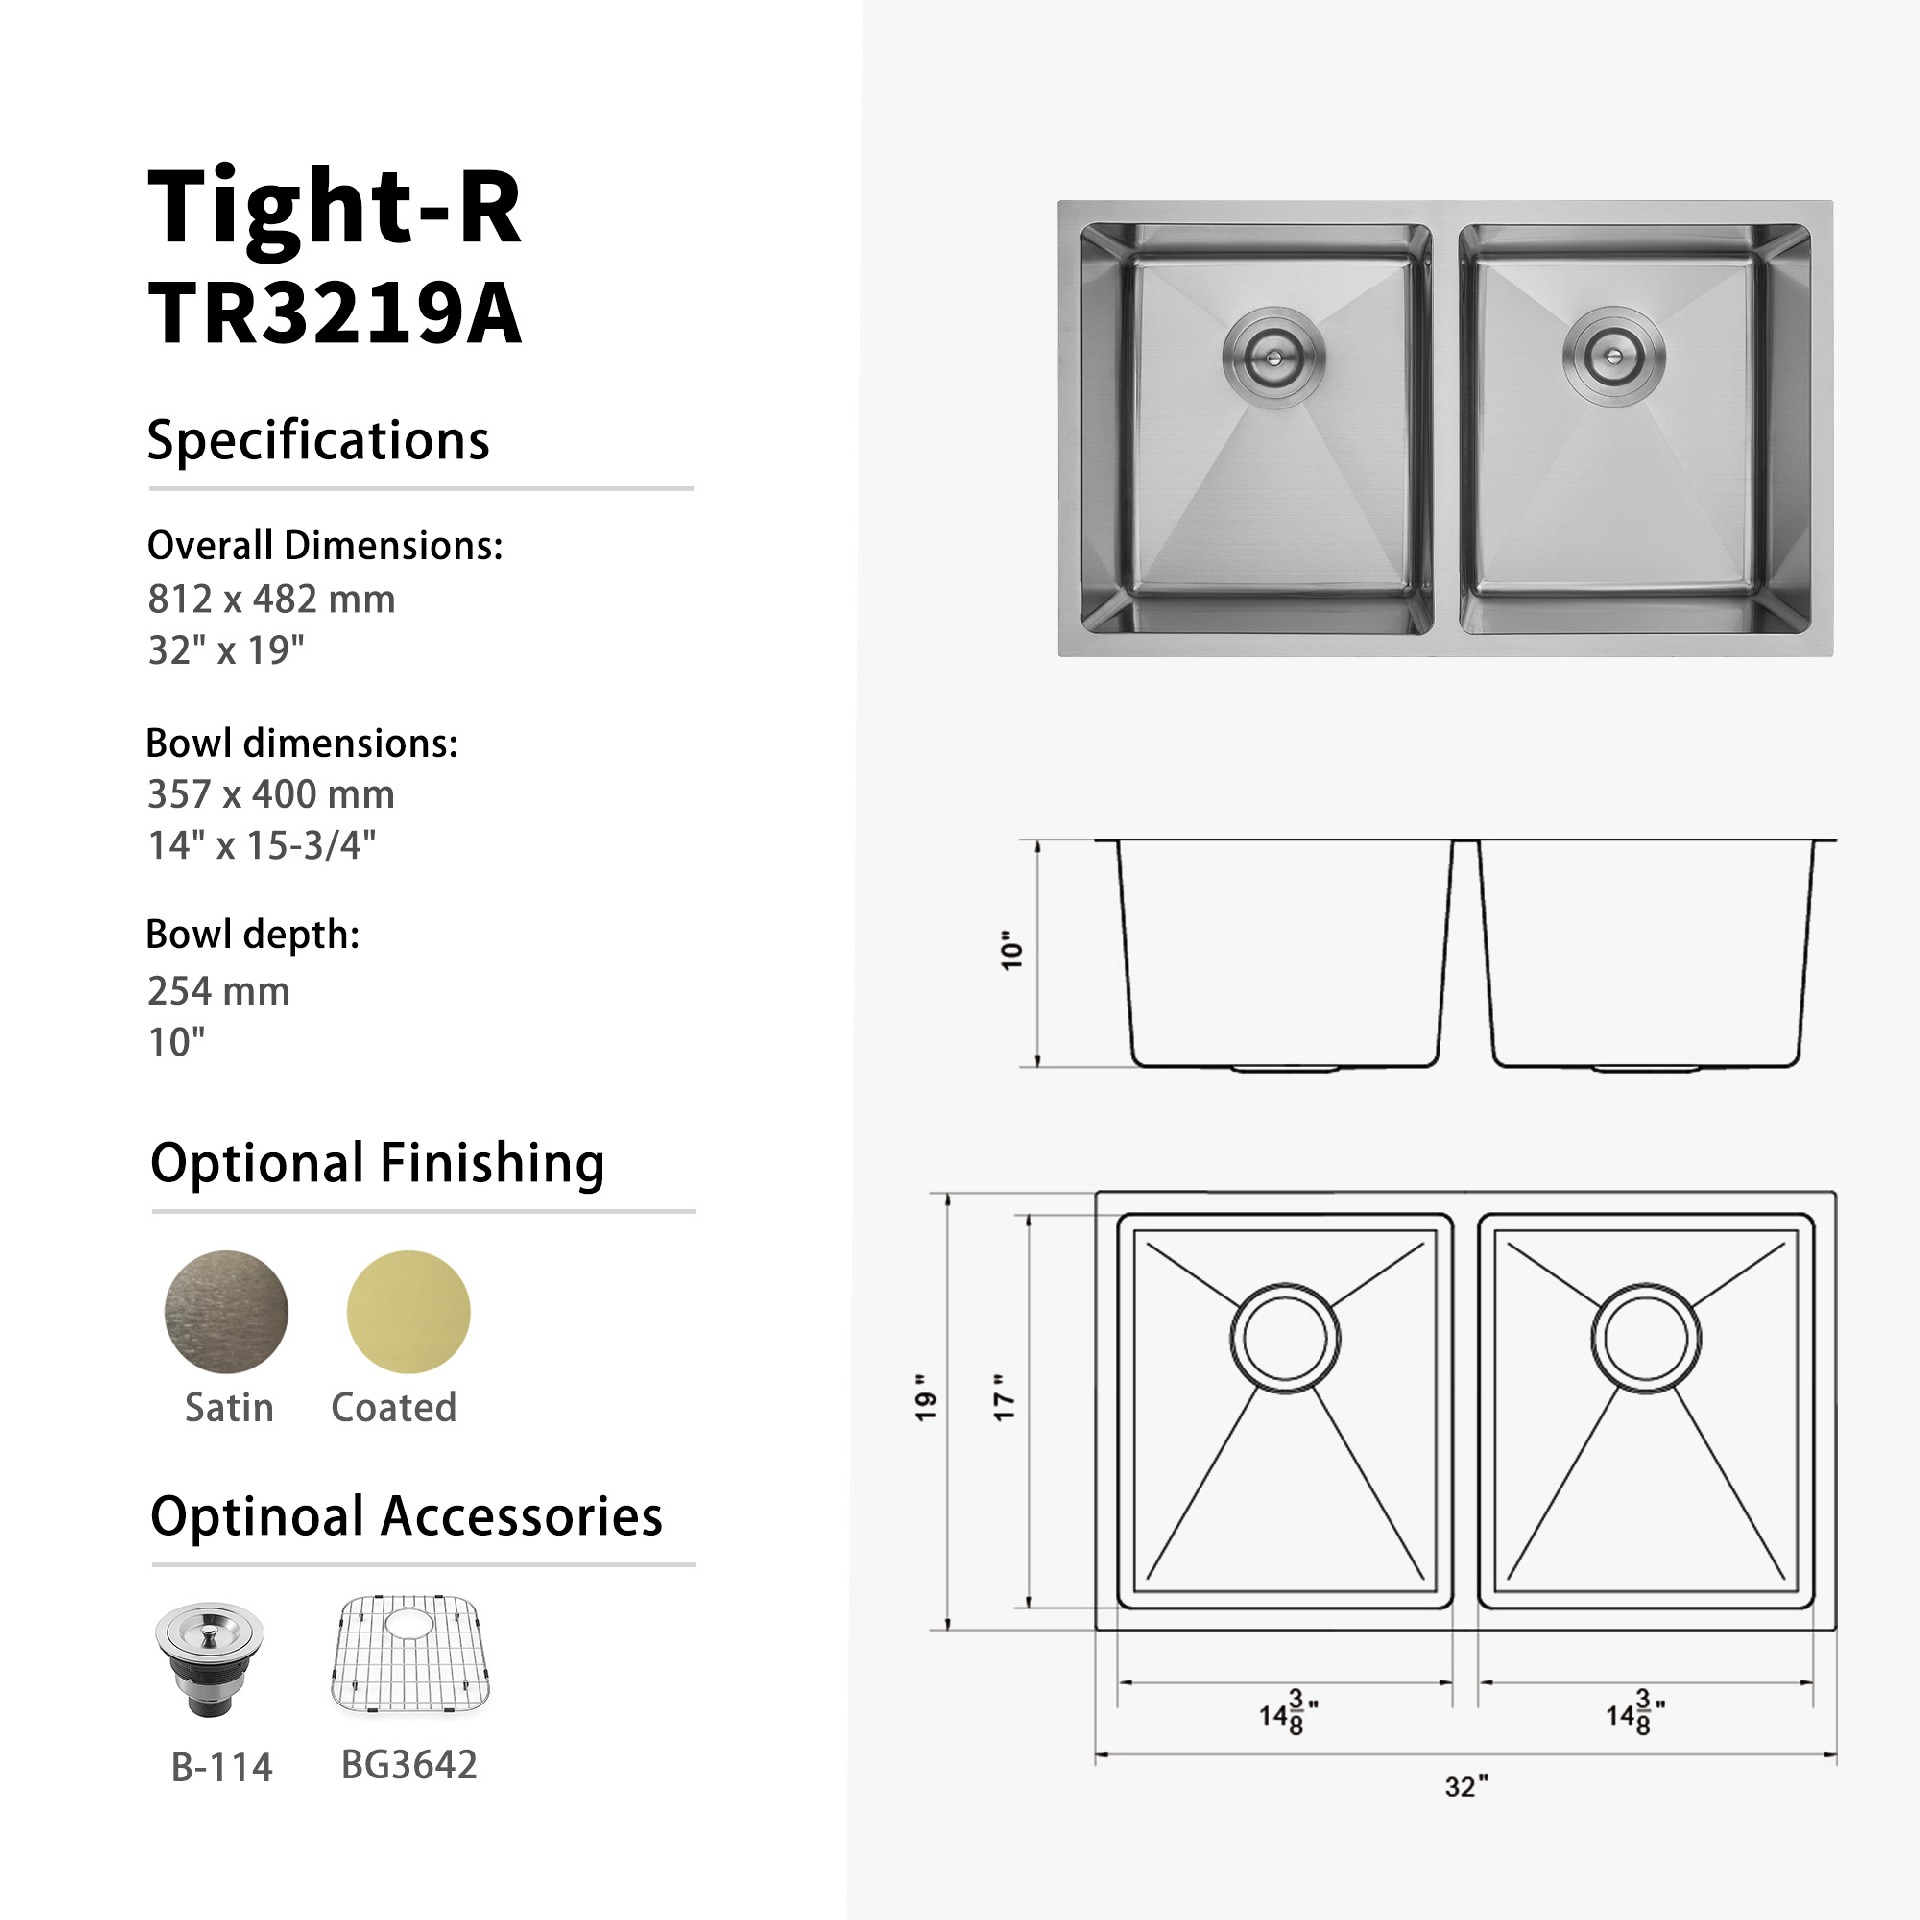 Tight-R.TR3219A